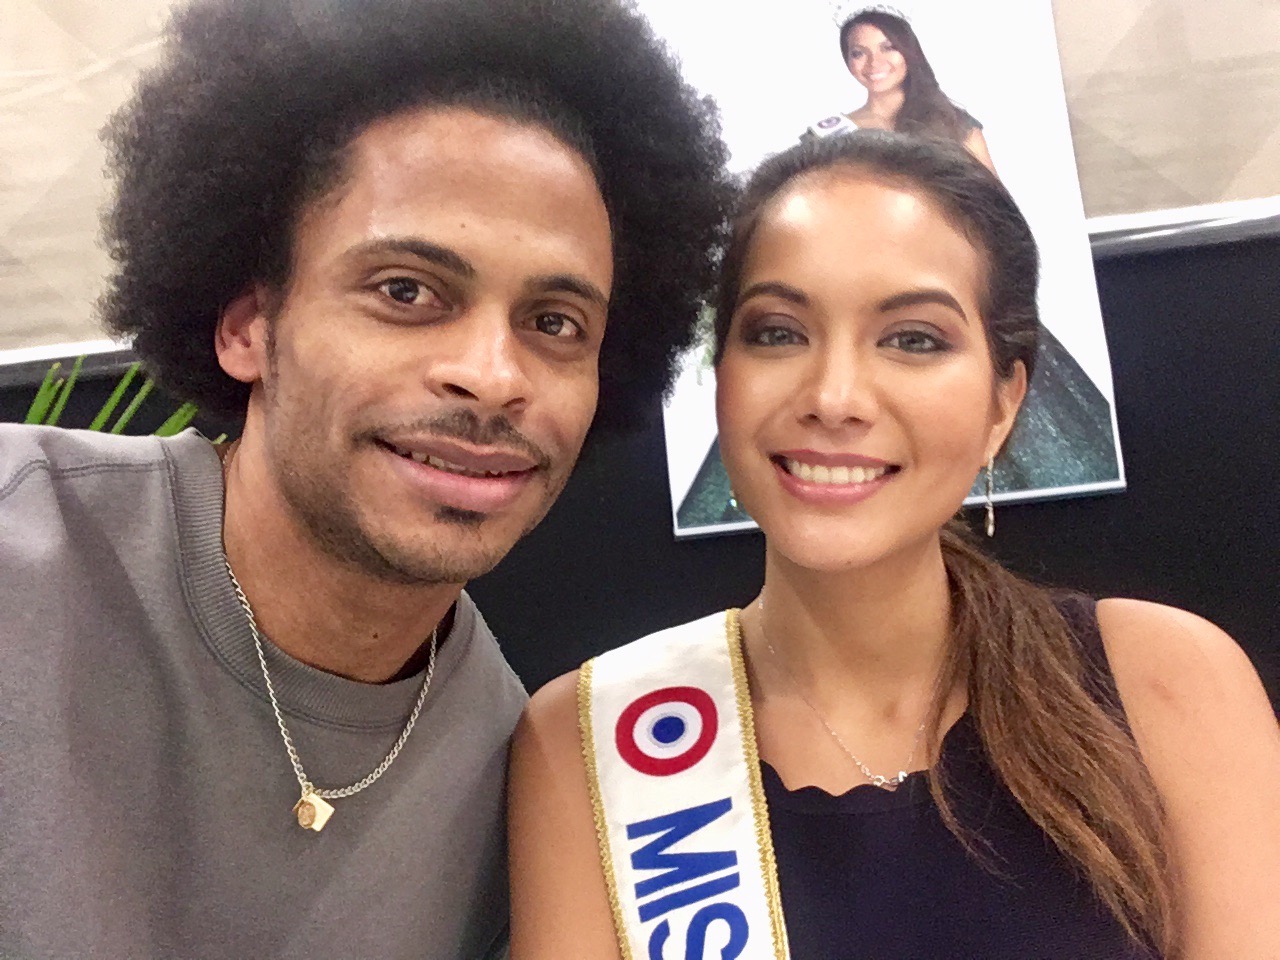 Vaimalama Chaves Miss France 2019